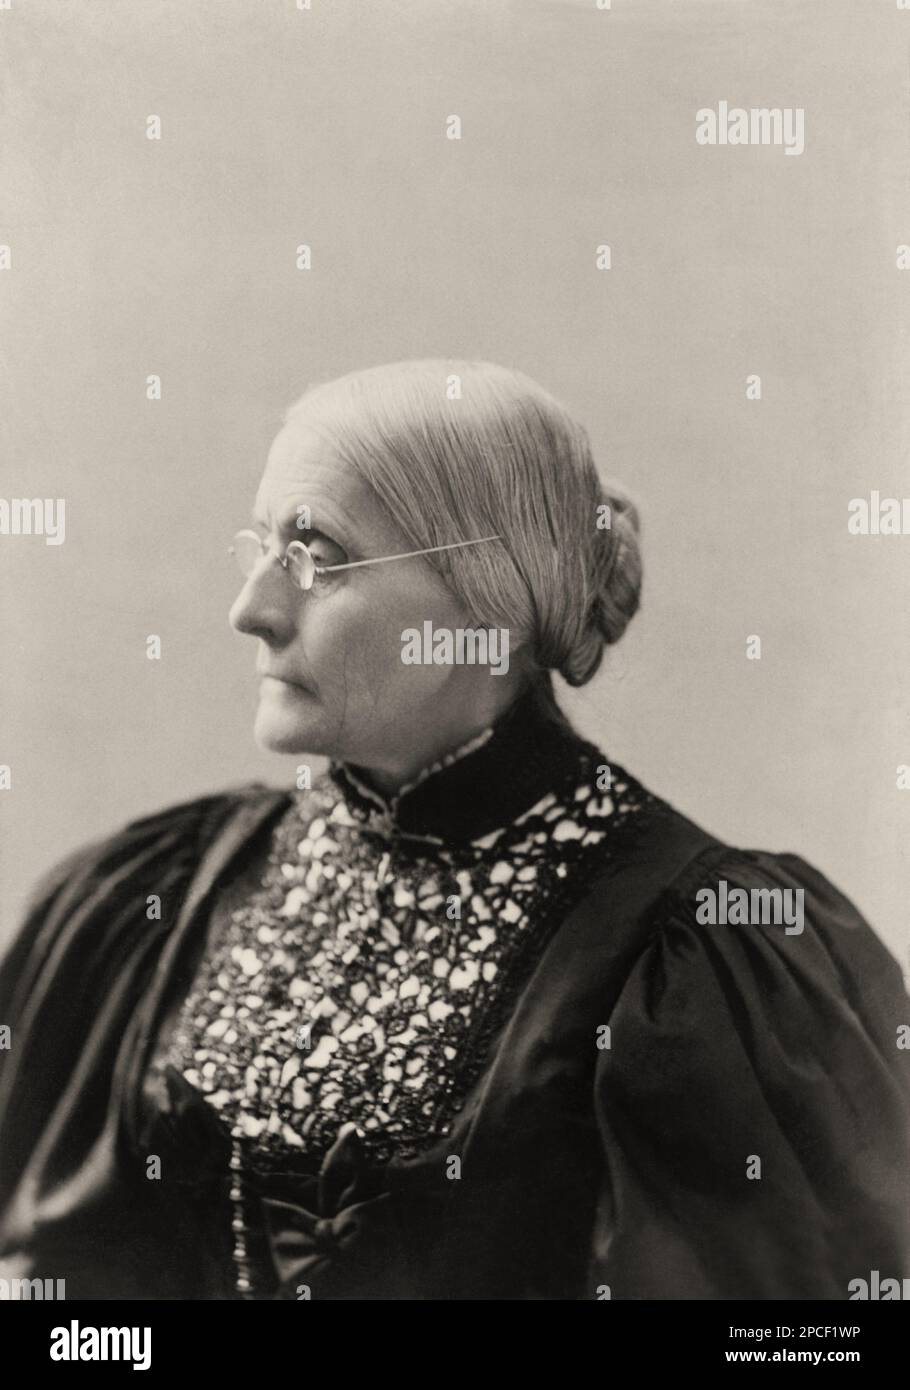 1895 ca , USA : The social activist abolitionist, and leading figure of the early woman's movement  SUSAN B. ANTHONY ( Susan Brownell , 1820 - 1906 ). Photo by Mrs. L. Condon  - SUFFRAGETTA - sufraggetta - Sufragist - POLITICO - POLITICIAN - POLITICA - POLITIC - FEMMINISMO - FEMMINISTA  - FEMMINISTE - SUFFRAGETTE - USA - ritratto - portrait  - FEMMINISM - FEMMINIST - SUFFRAGIO UNIVERSALE - VOTO POLITICO ALLE DONNE - FASHION - MODA  - OTTOCENTO - 800's - '800 - donna anziana vecchia - ancient old woman - lace - pizzo - profilo - profile - chignon - lens - occhiali da vista -----  Archivio GBB Stock Photo